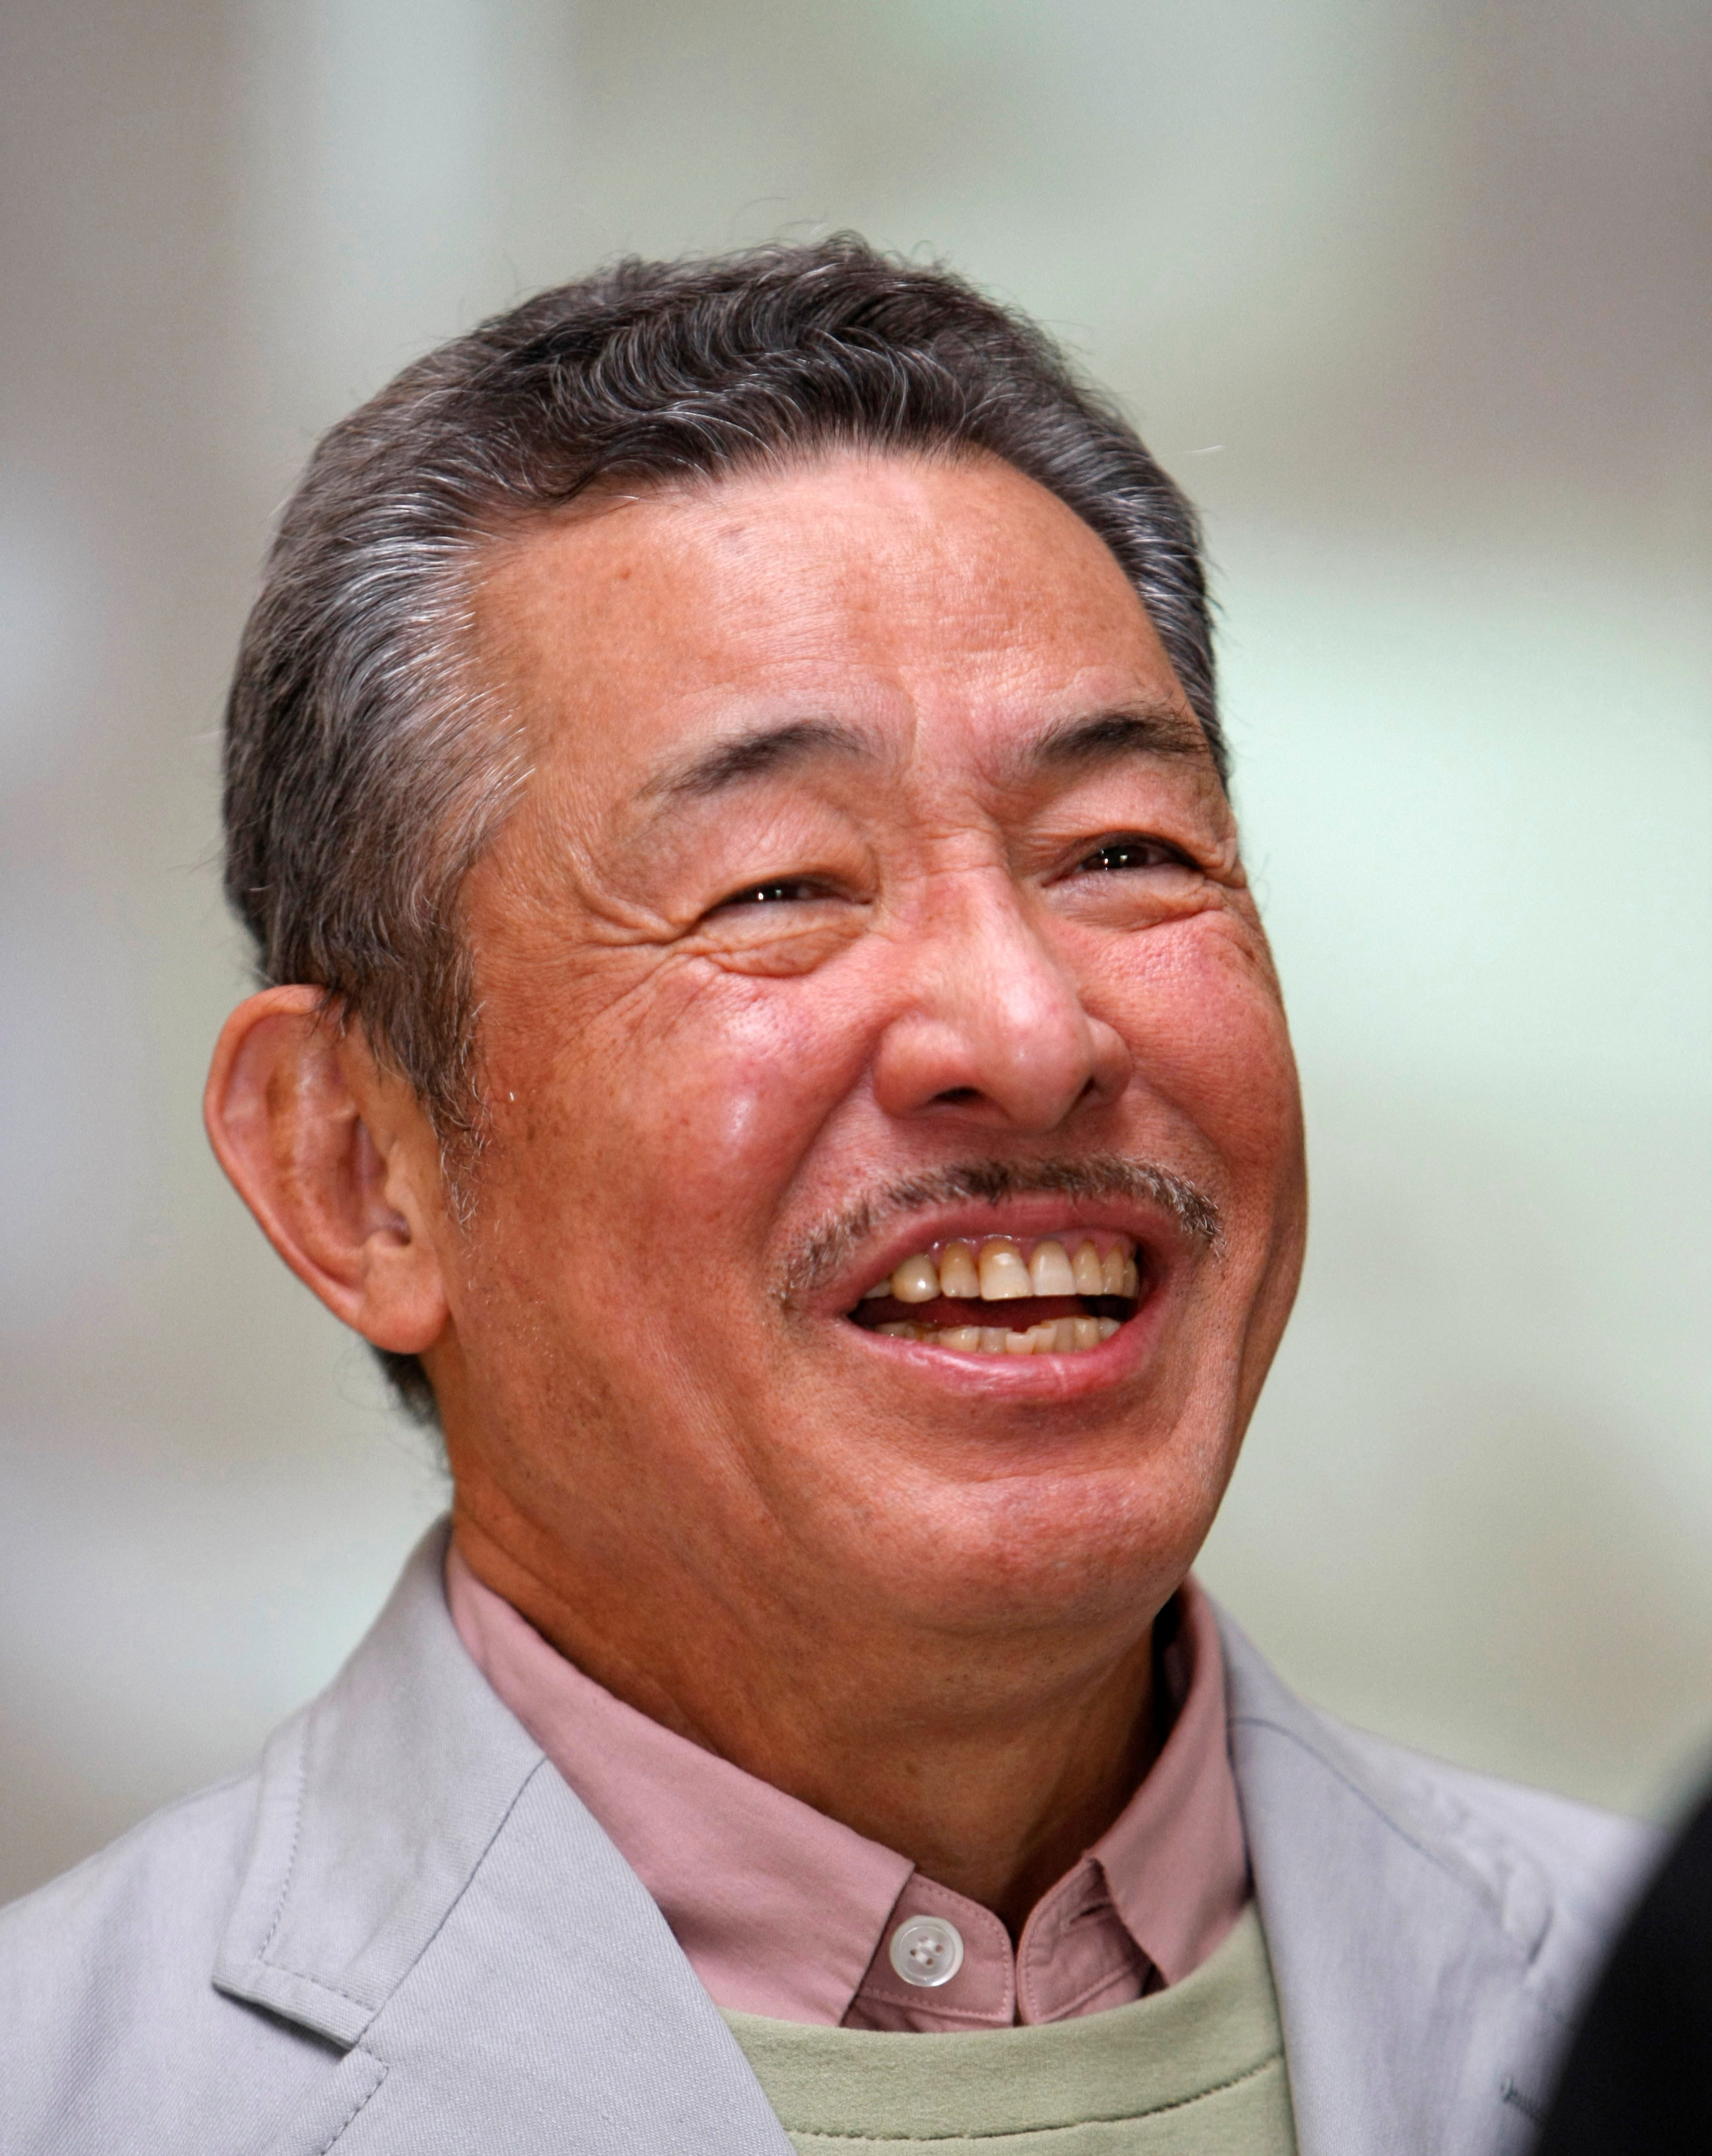 Модельер скончался после продолжительной борьбы с раком печени. Фото: REUTERS/Kim Kyung-Hoon